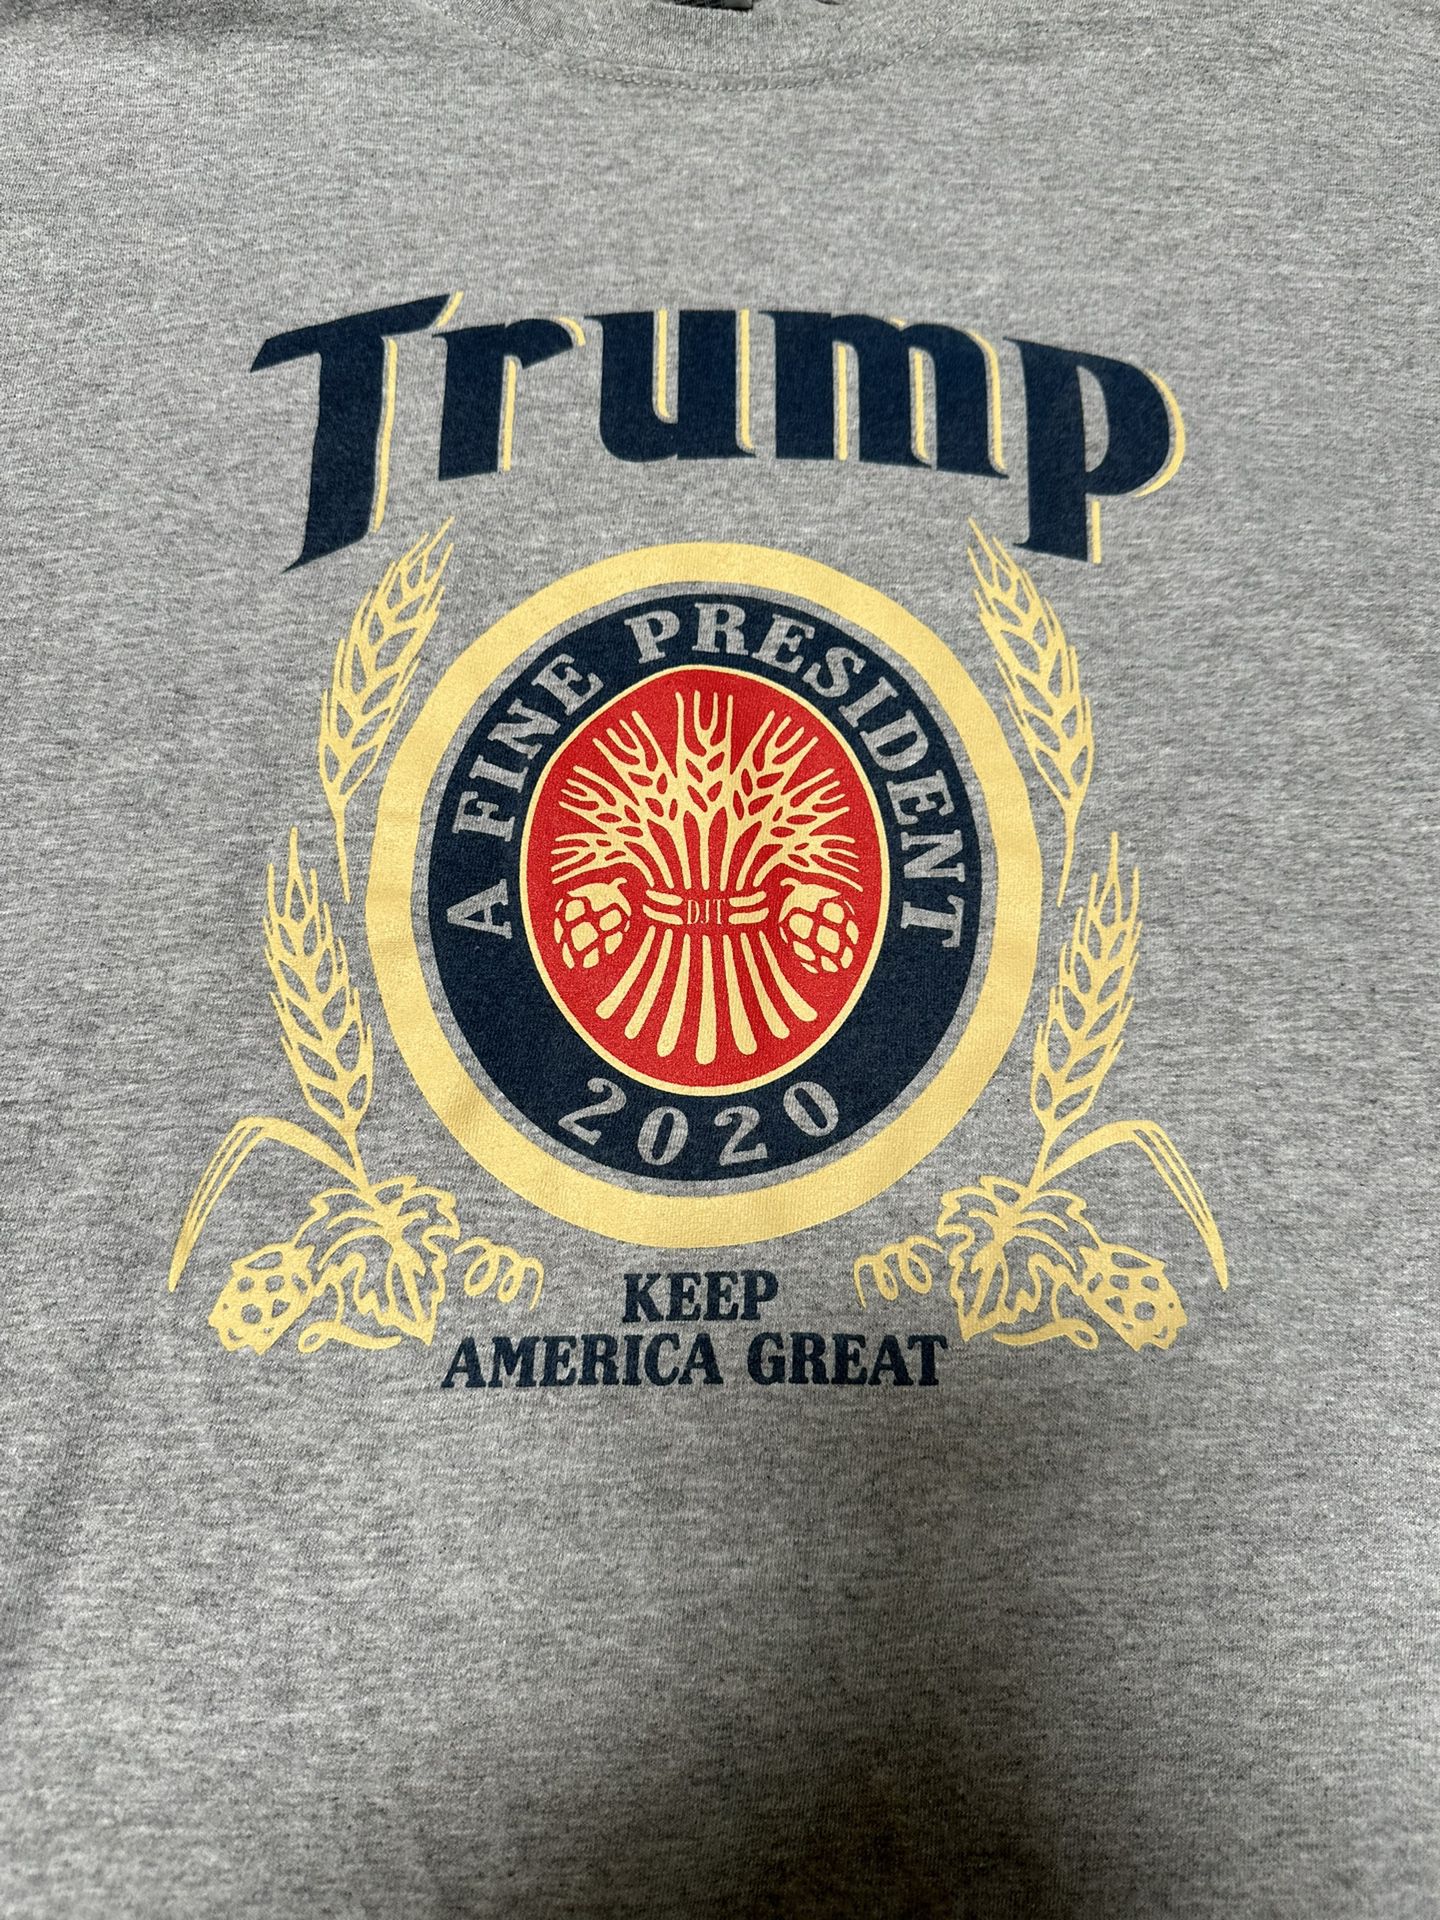 Trump (2020) Tshirt 